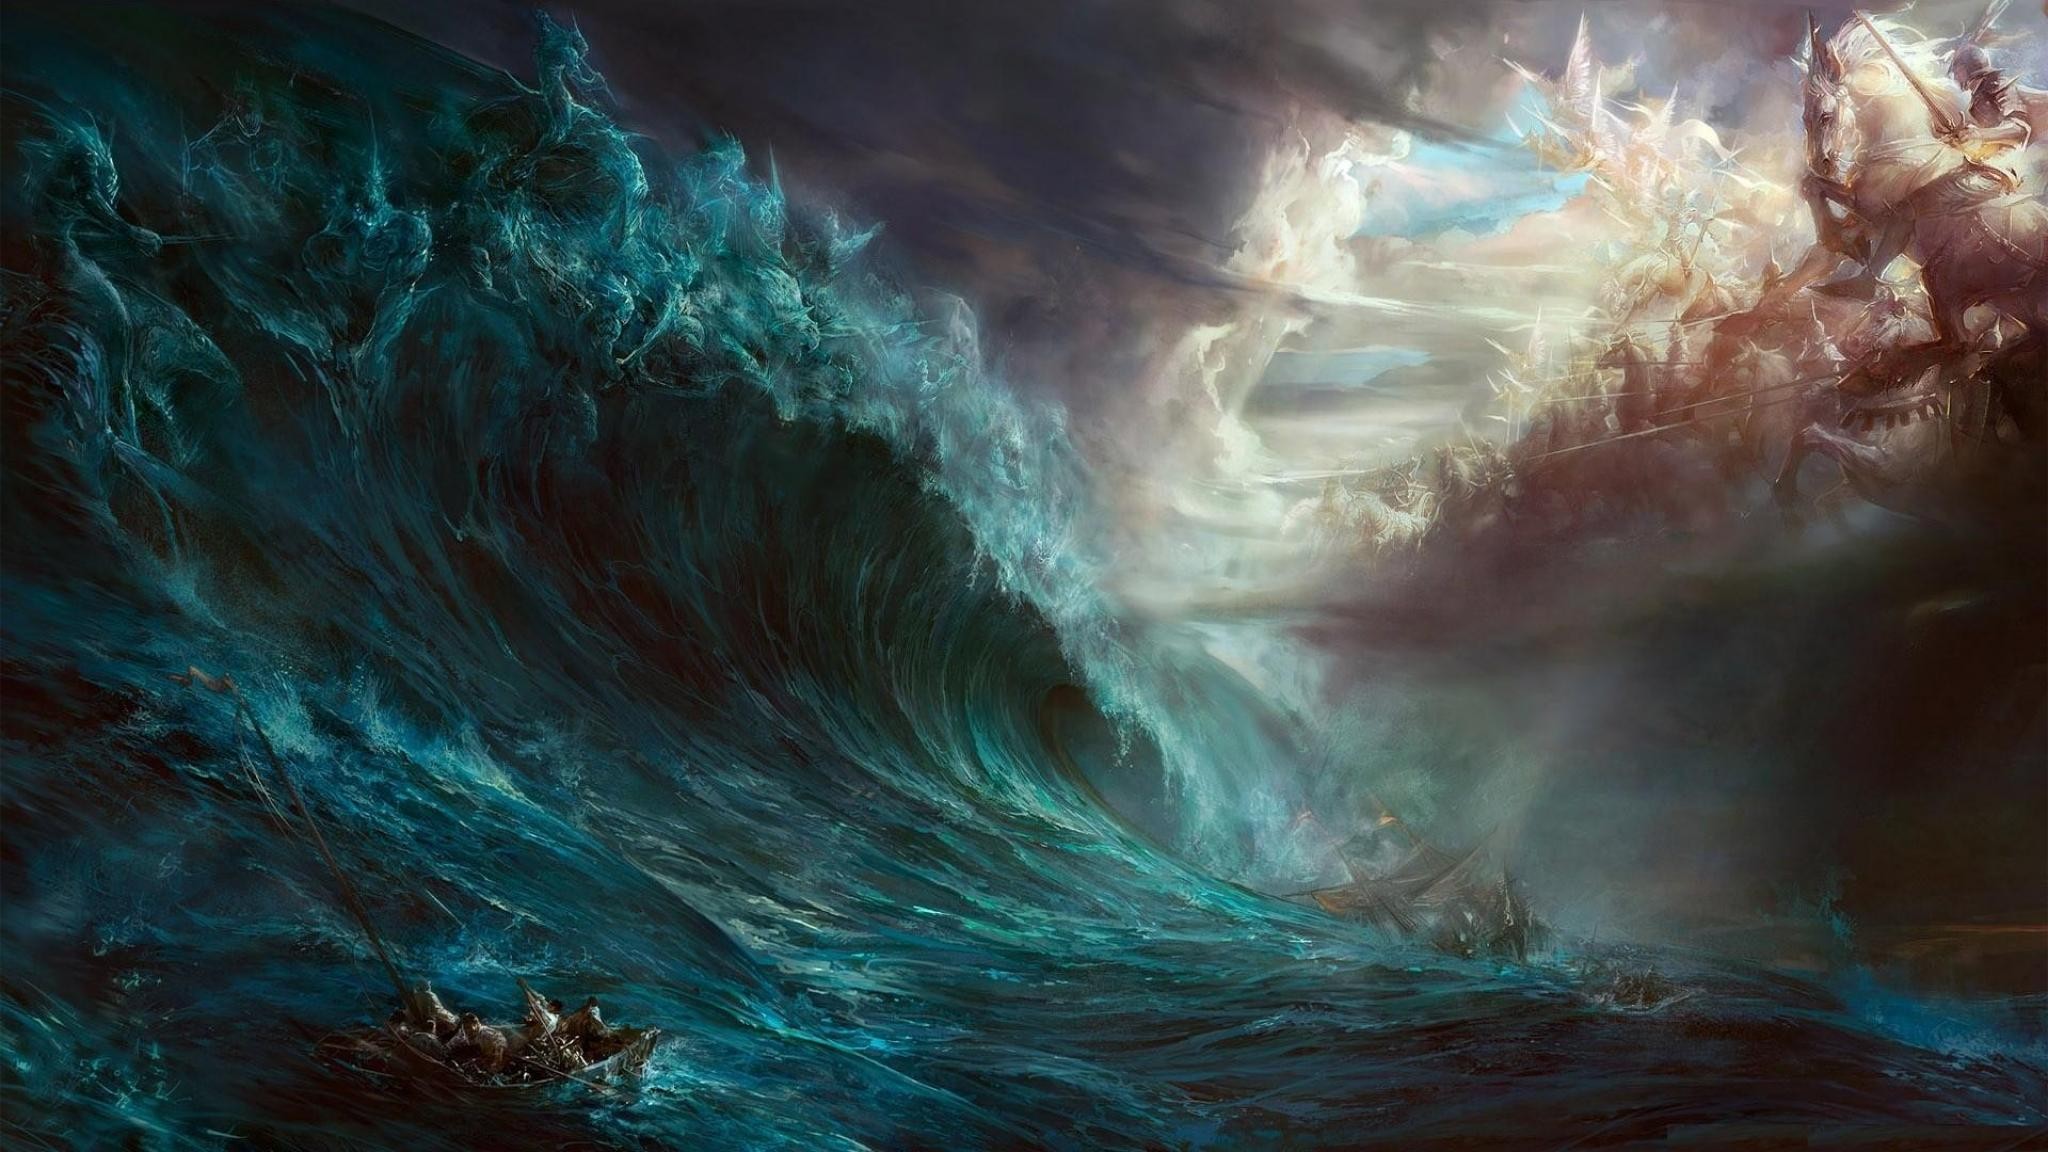 fantasy art, Digital art, Artwork, Cronus, Zeus, Sea, Storm, Ship, War, God, Devil Wallpaper